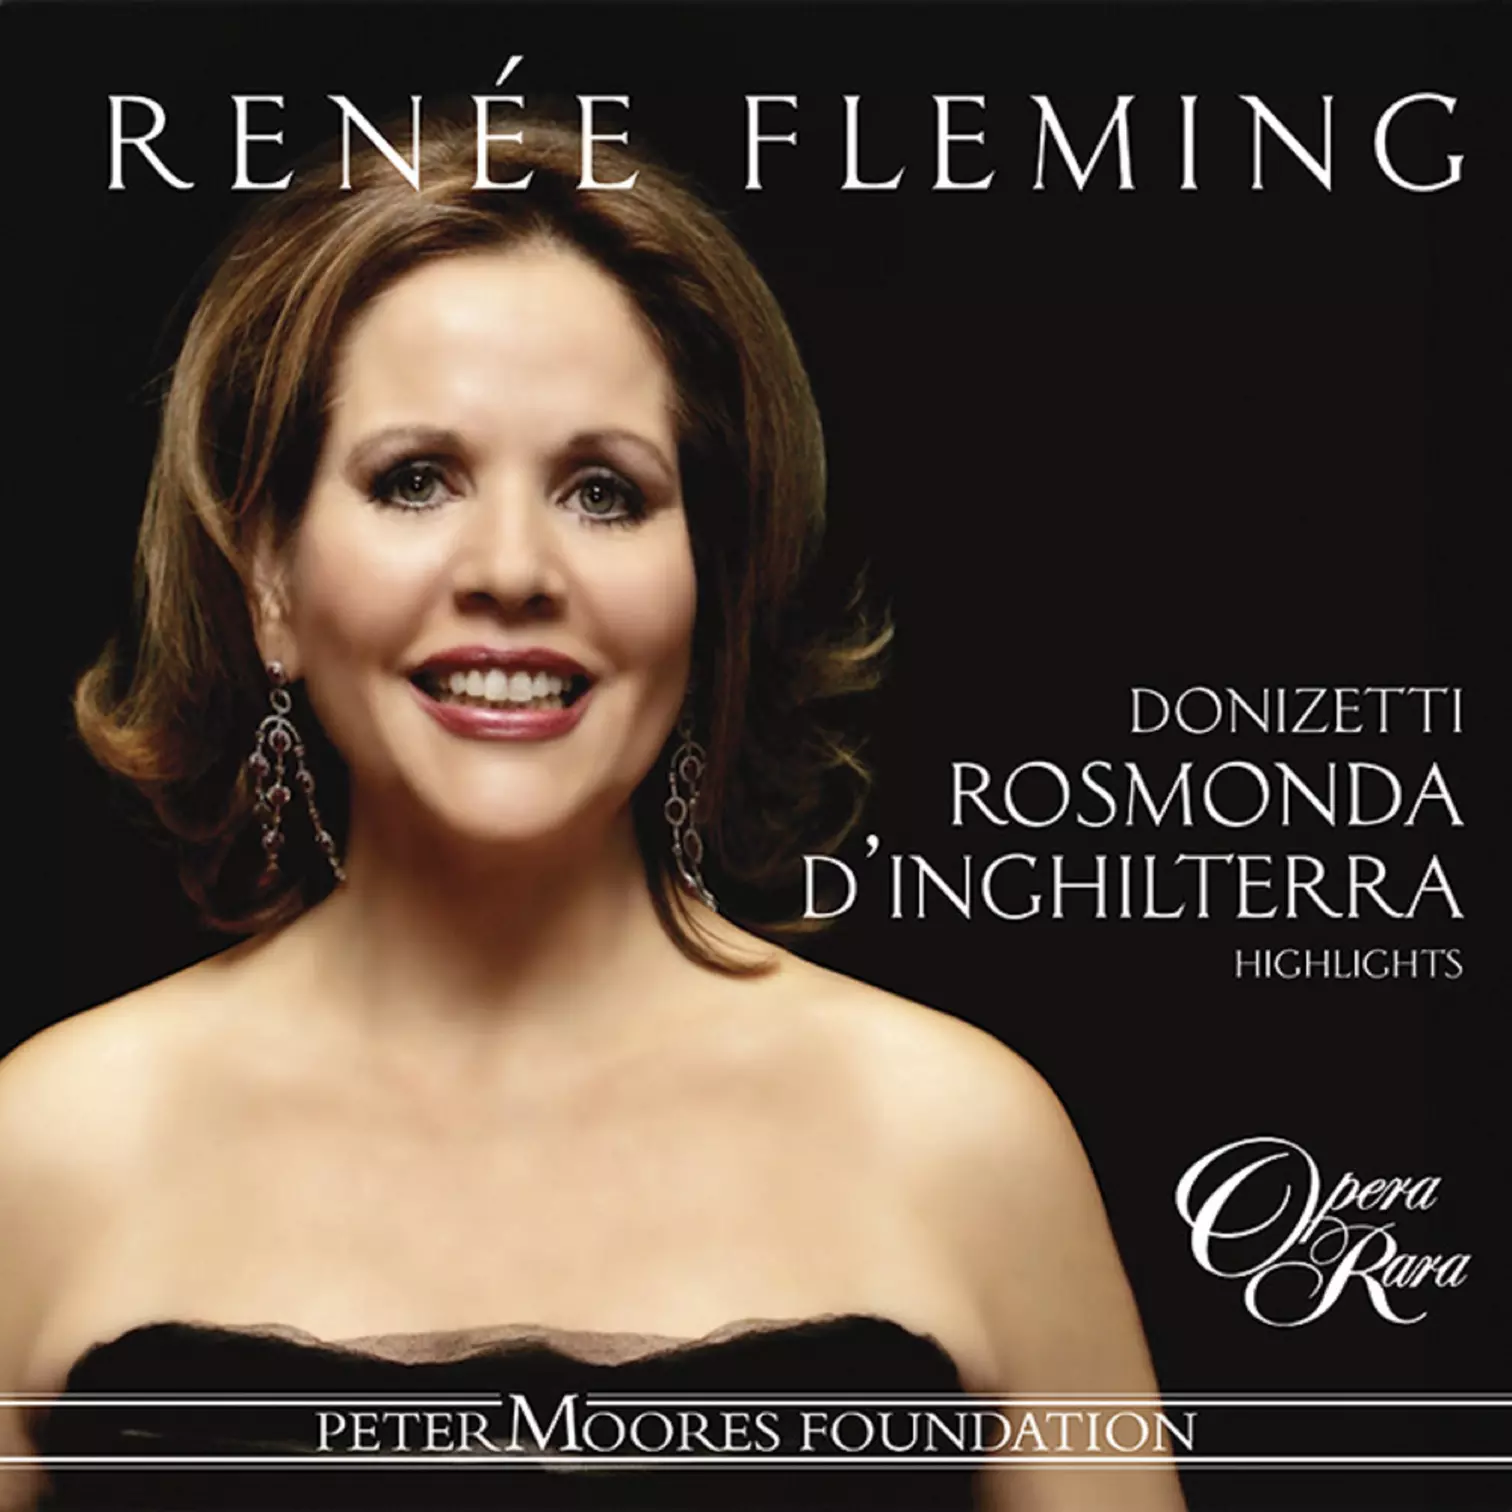 Renée Fleming sings Rosmonda d’Inghilterra